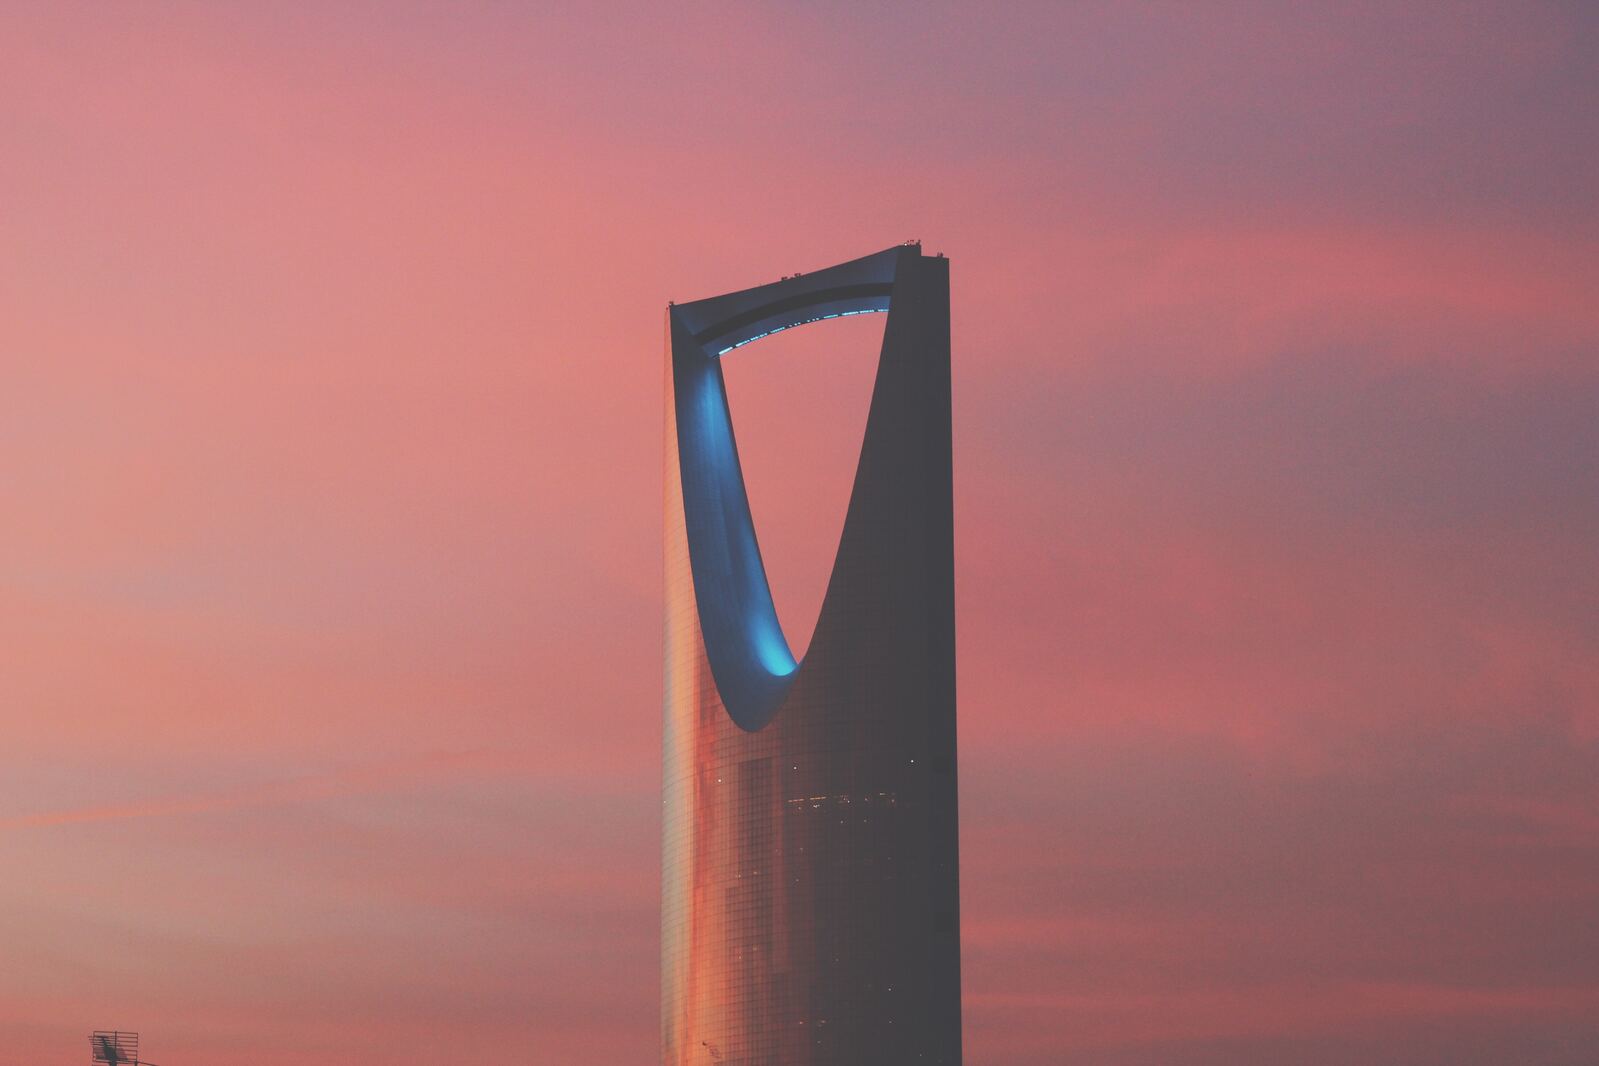 Image of Kingdom Centre Riyadh by Team PhotoHound